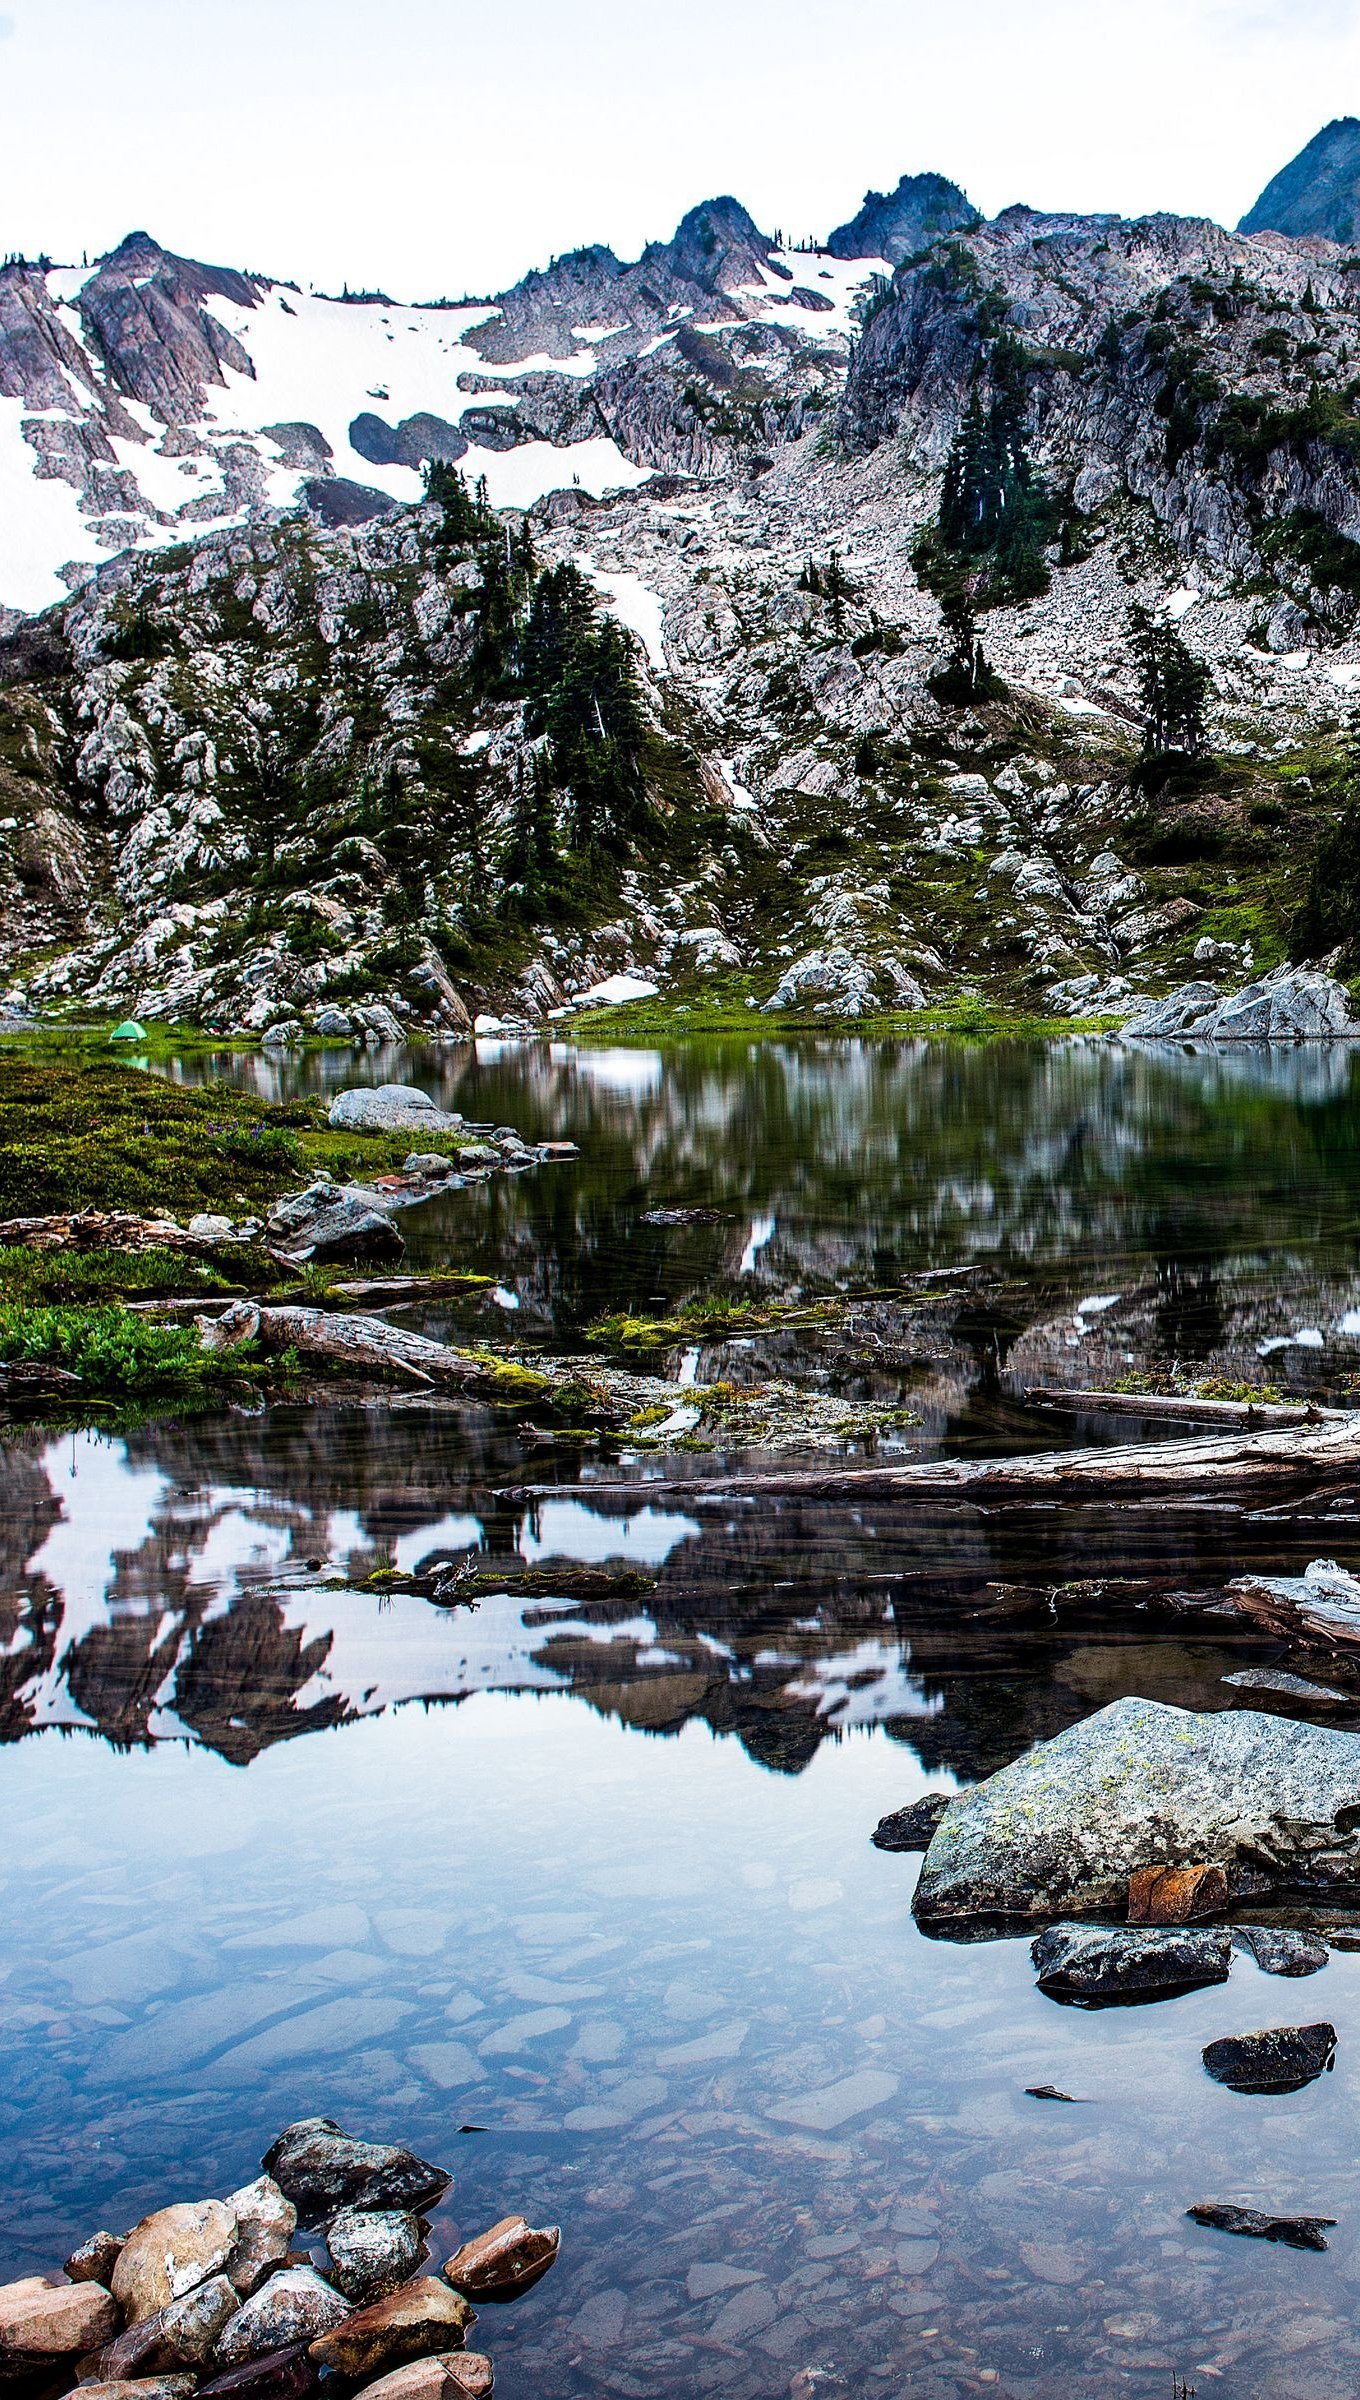 Fondos de pantalla Lago en las rocas y montañas Vertical